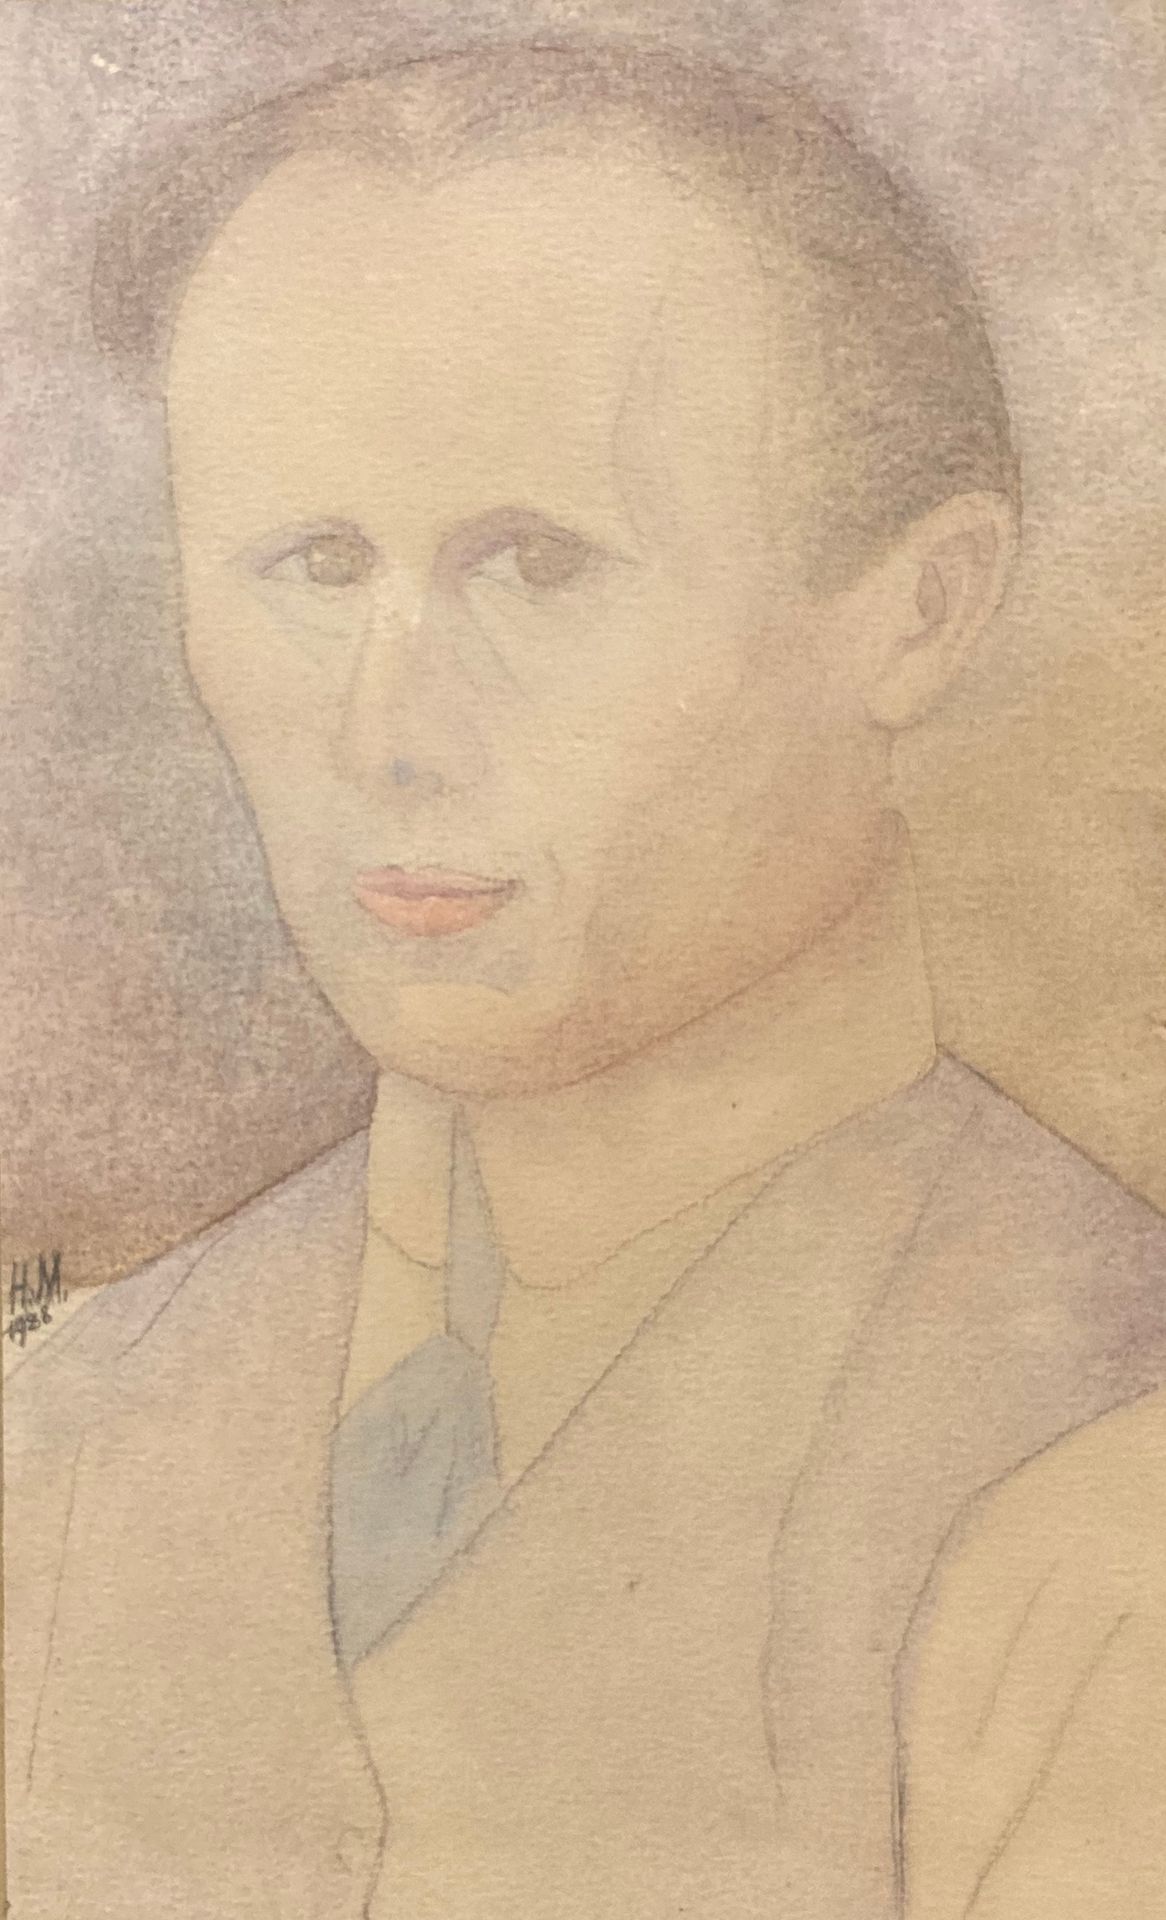 Null 
打着领带的男子肖像。纸上水彩画，左侧有HM字样。34.5 x 21 厘米。